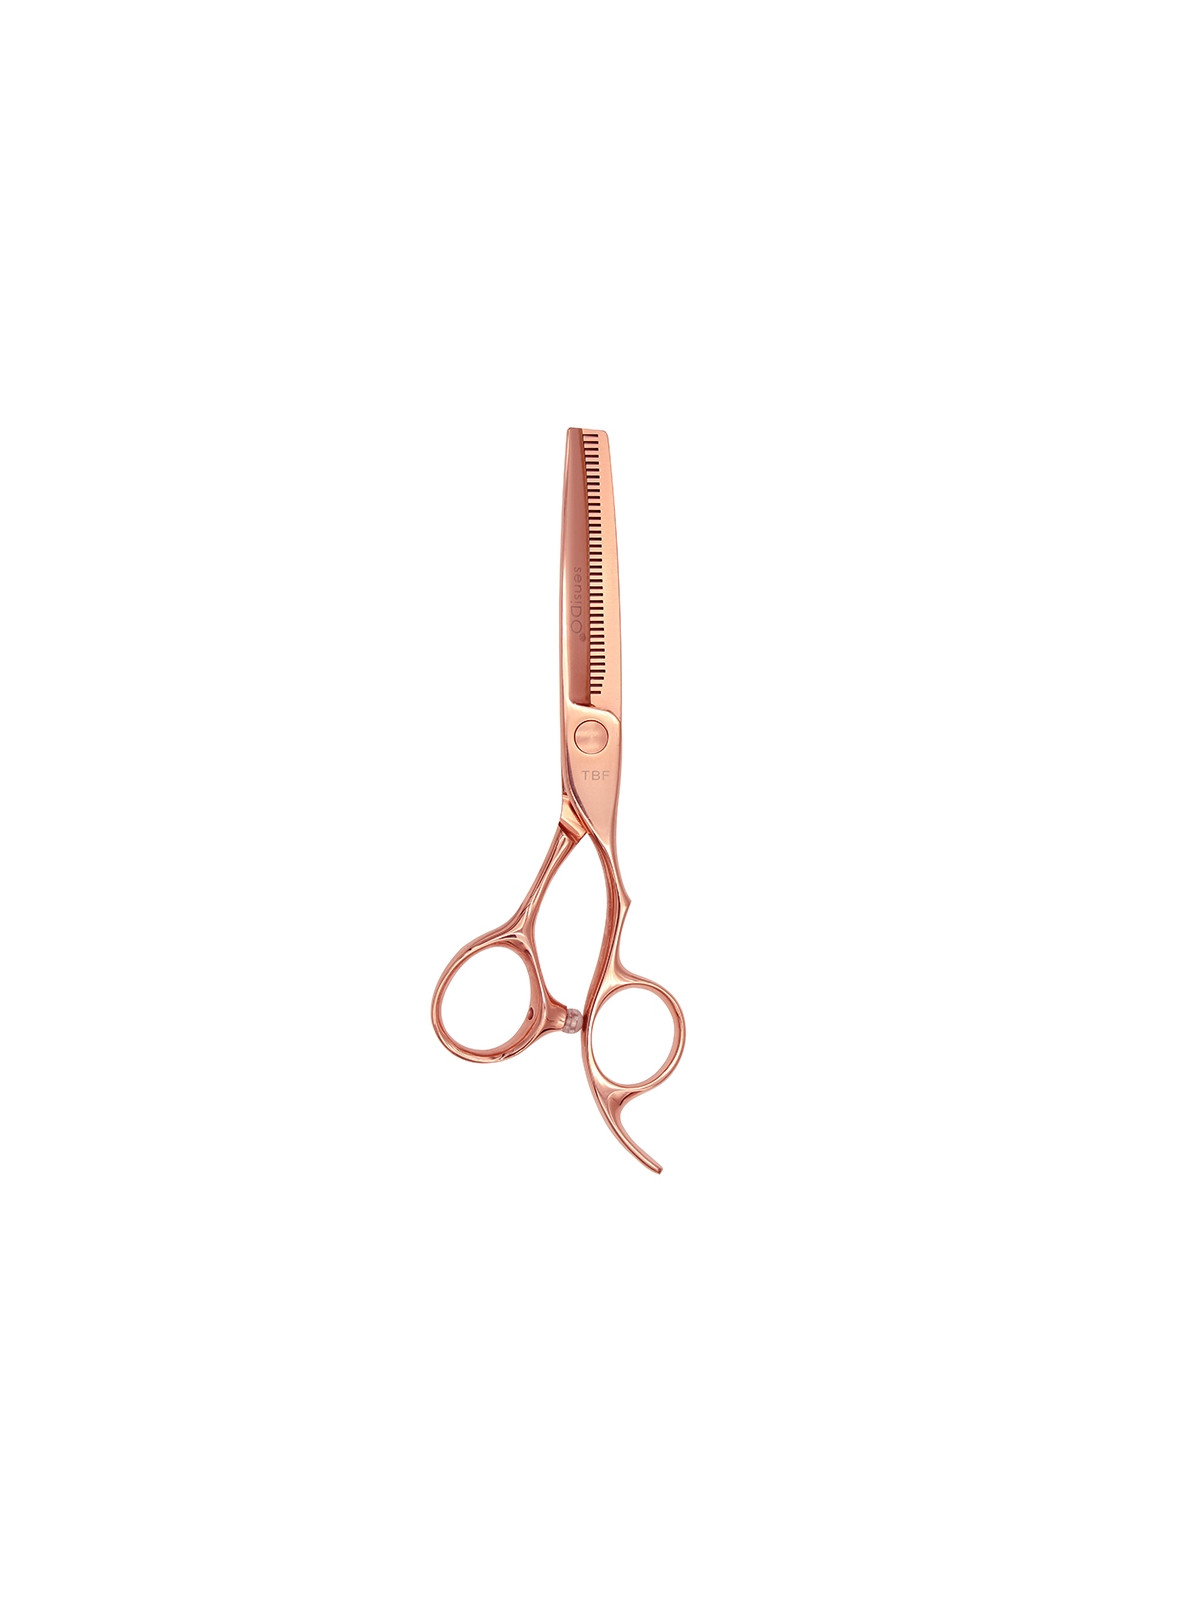 SensiDO TBF Rose Gold Titanium thinning scissors